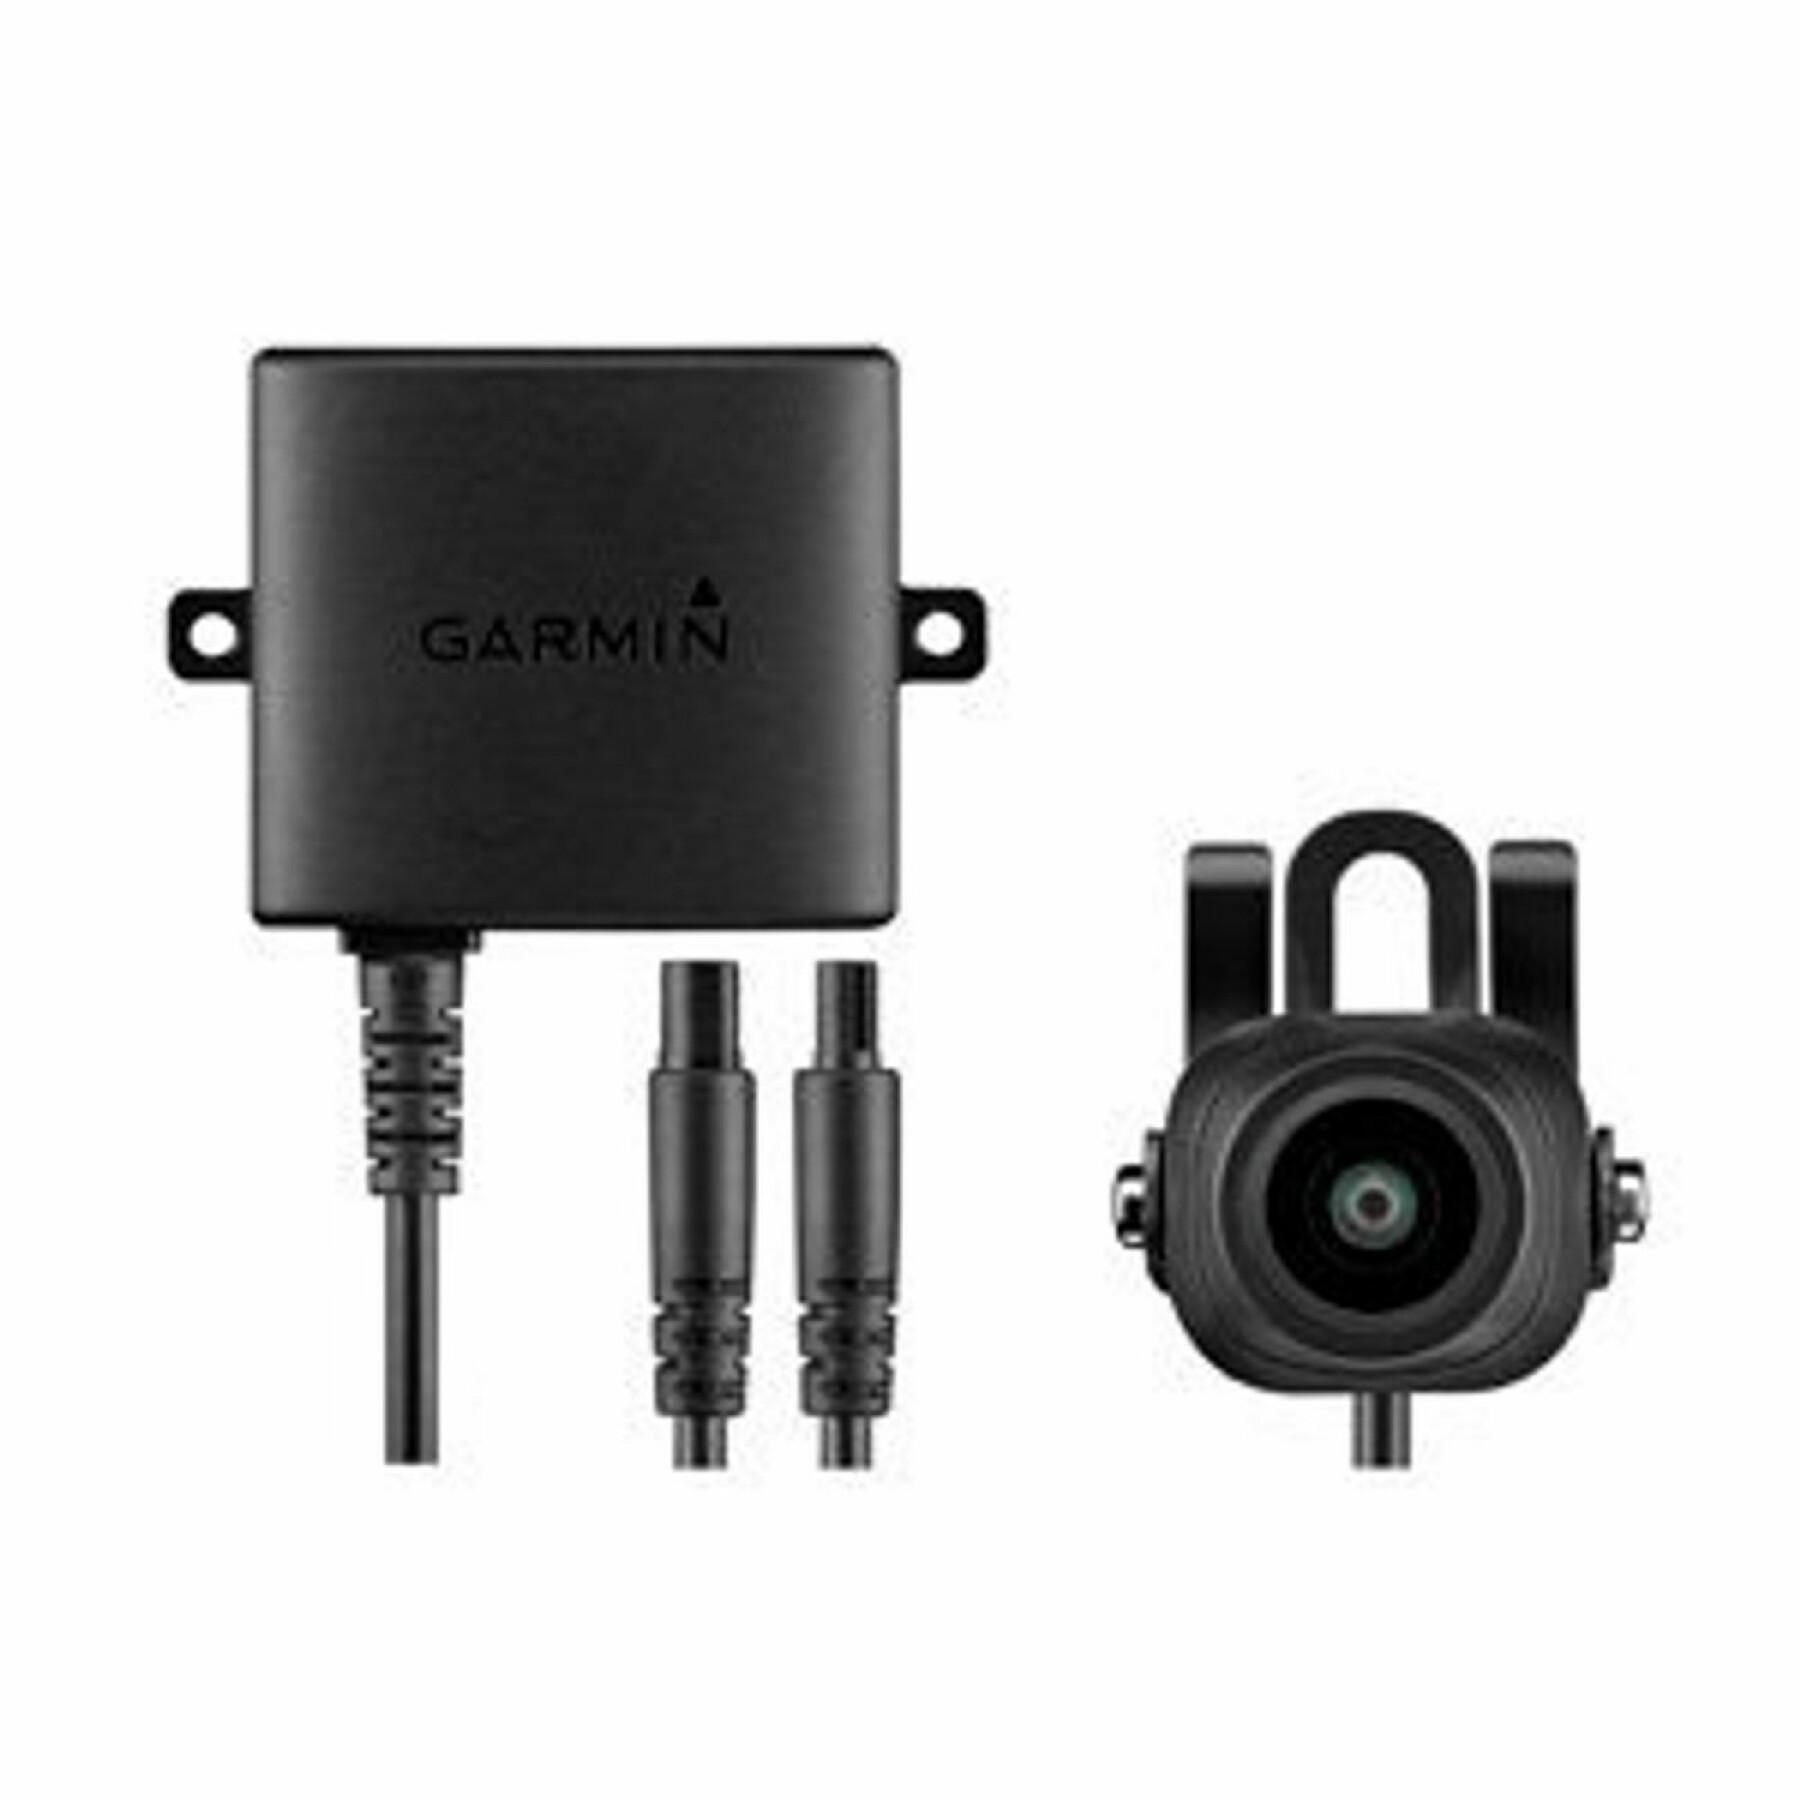 Receptor Garmin sans fil bc 30 / câble du récepteur info-trafic et câble allume-cigare